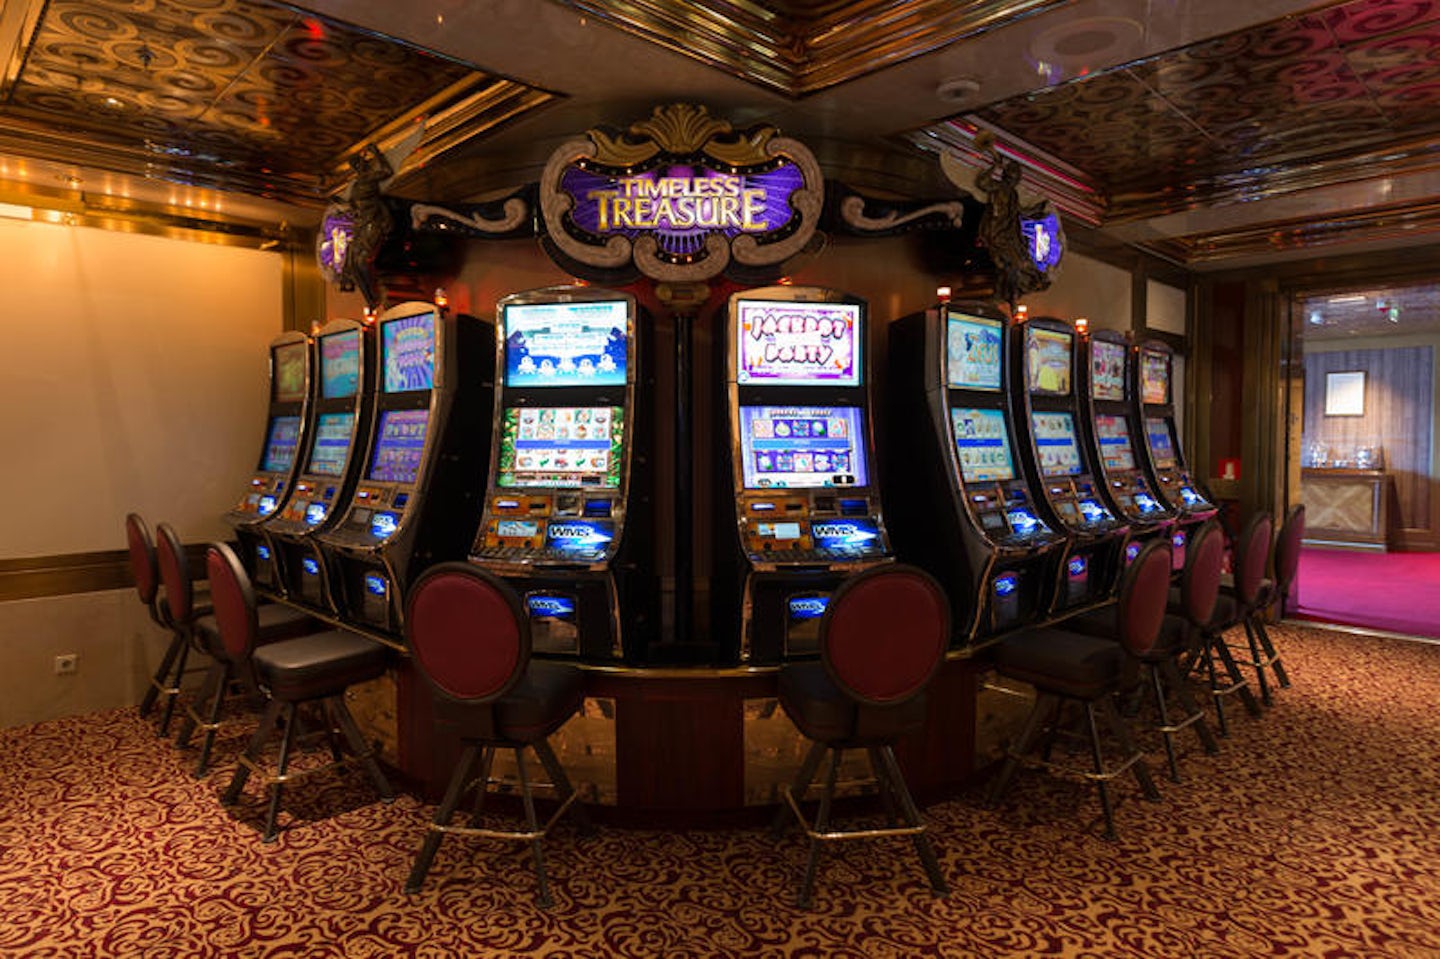 Fortunes Casino on Celebrity Millennium